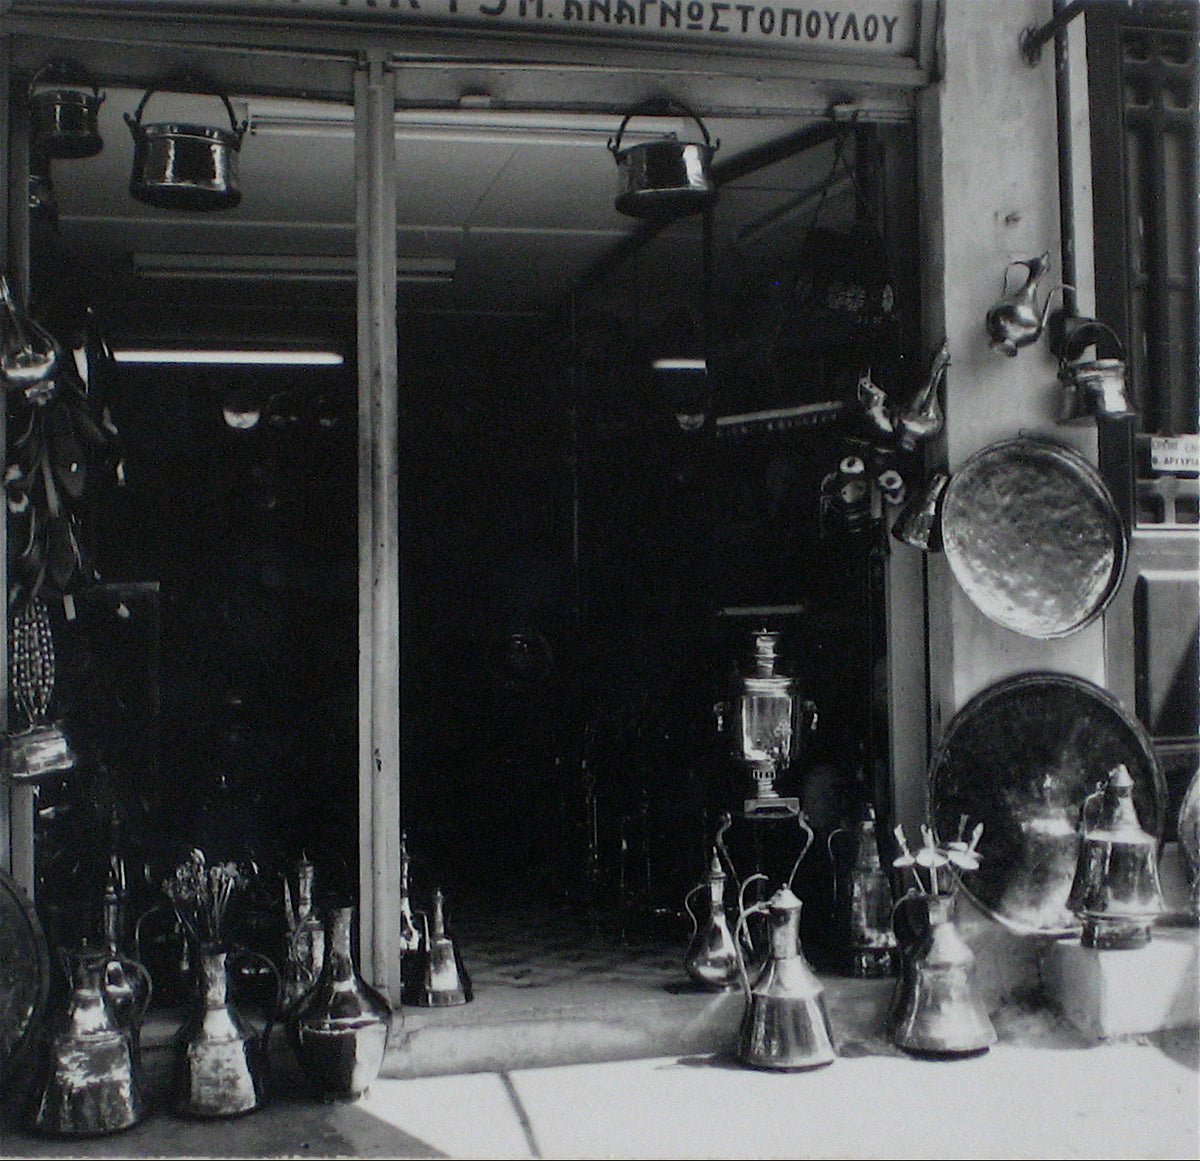 Greek Storefront &lt;br&gt;1960s Photograph&lt;br&gt;&lt;br&gt;#12284